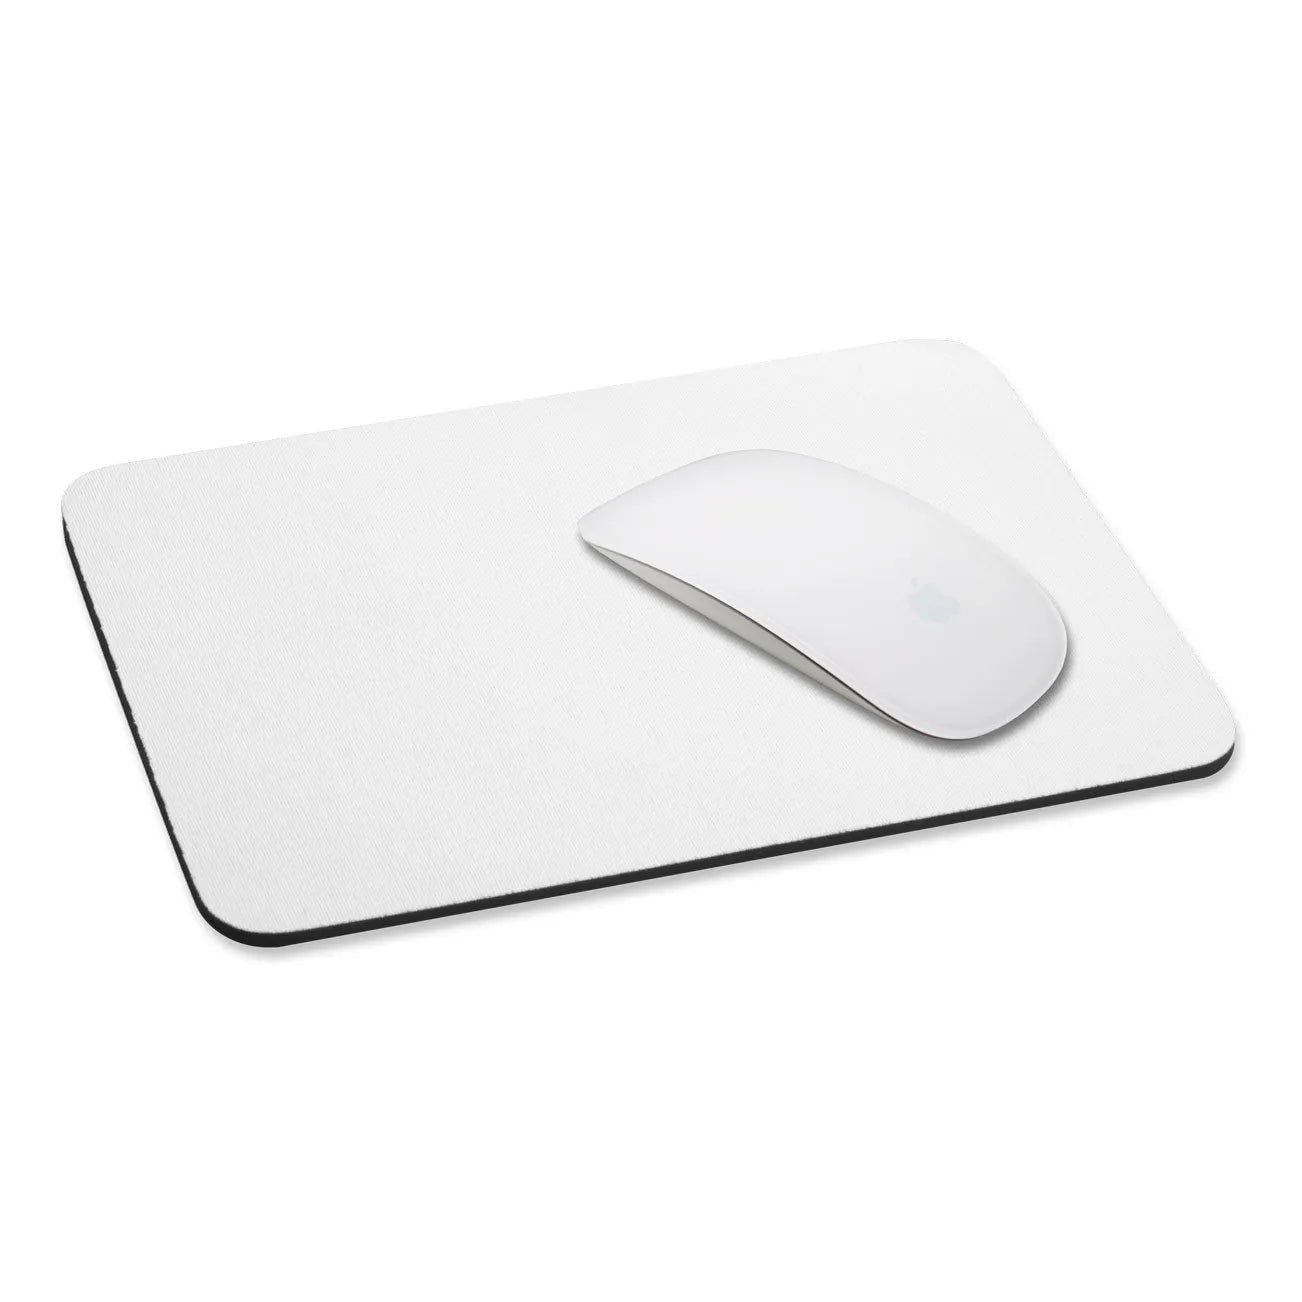 MousePad Rectangular Standard